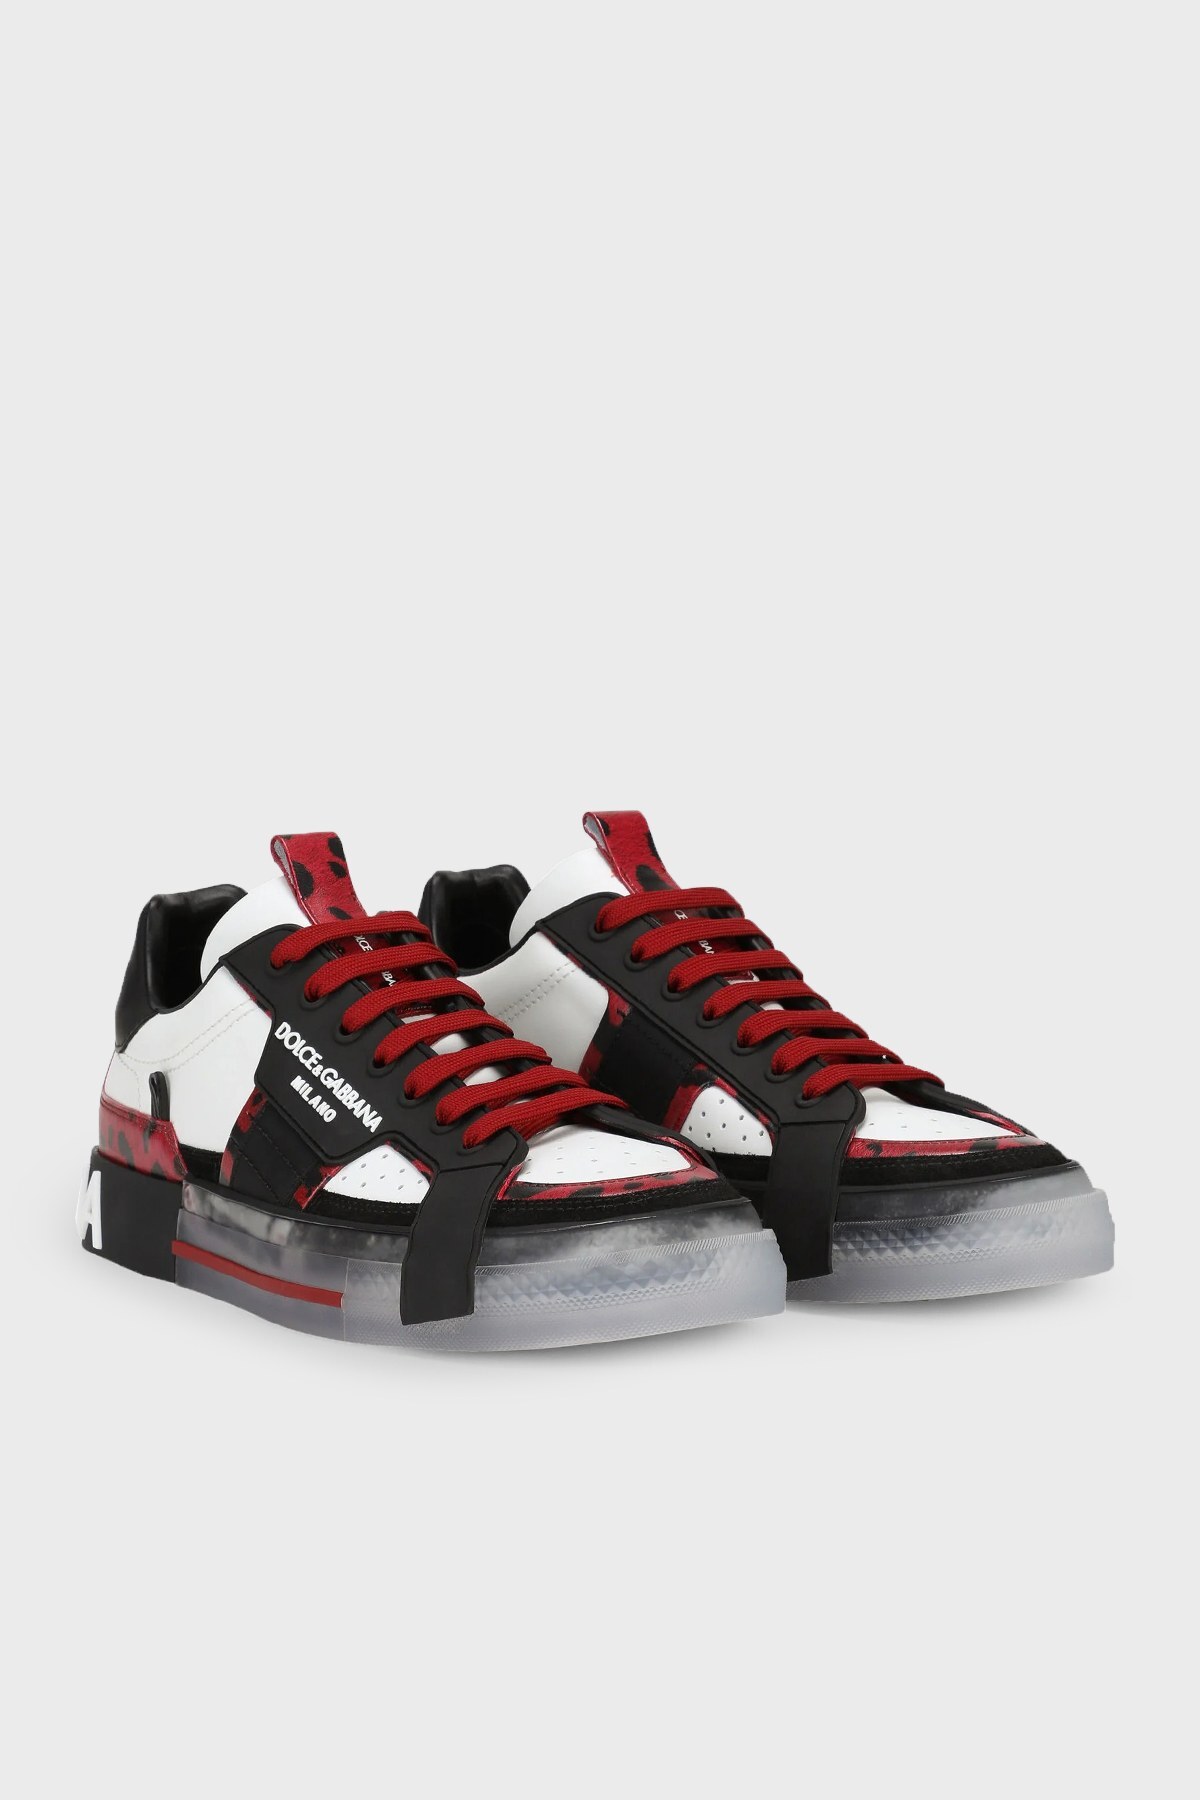 Dolce Gabbana Logolu Deri Sneaker Erkek Ayakkabı CS1863 AQ698 HR13N SİYAH-BEYAZ